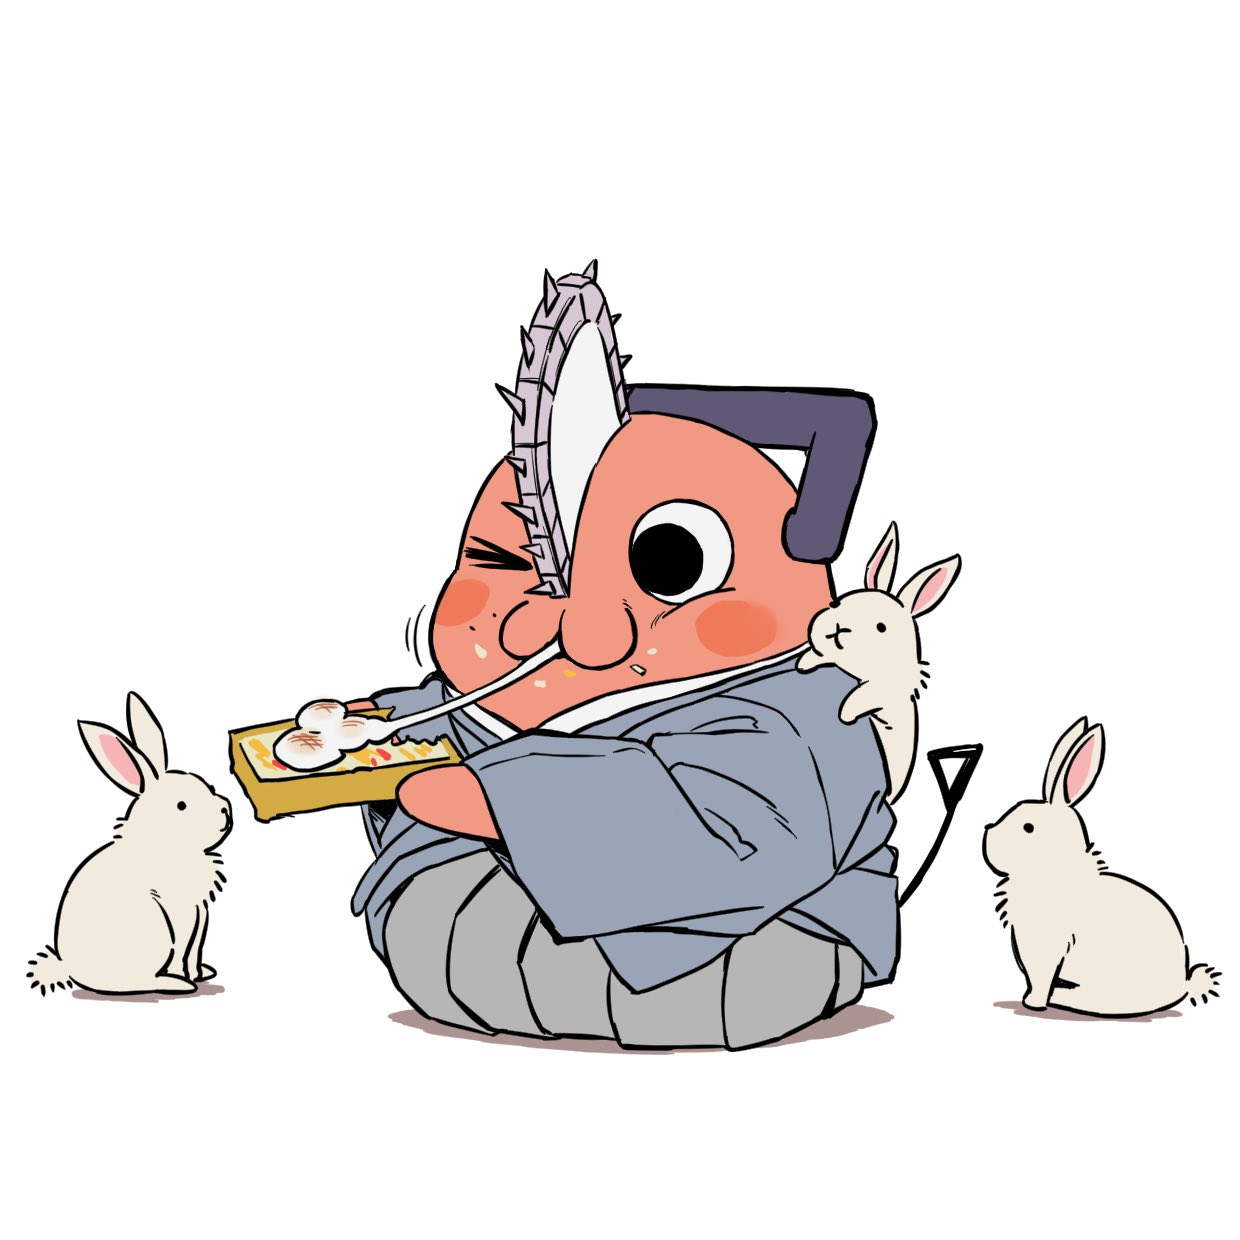 チェンソーマン「ポチタ」が兎と餅を食べる謹賀新年の描き下ろし登場!